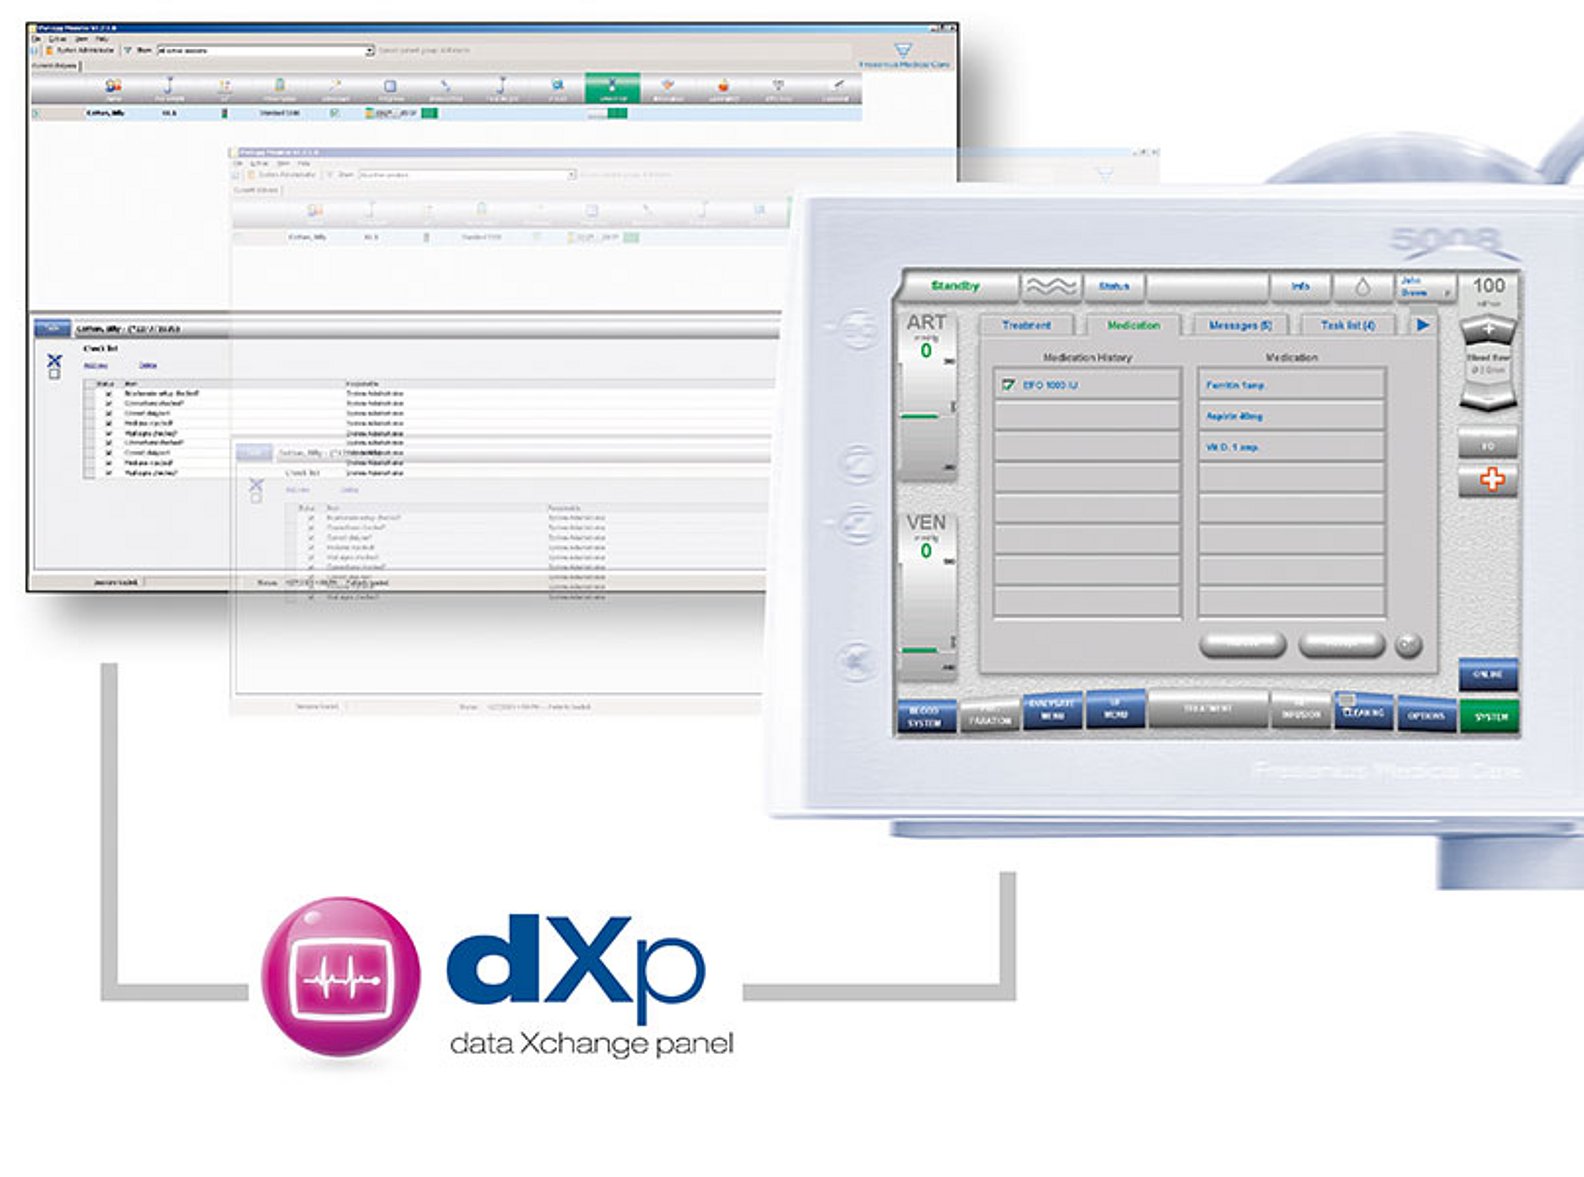 Data Xchange panel (dXp) de Fresenius Medical Care